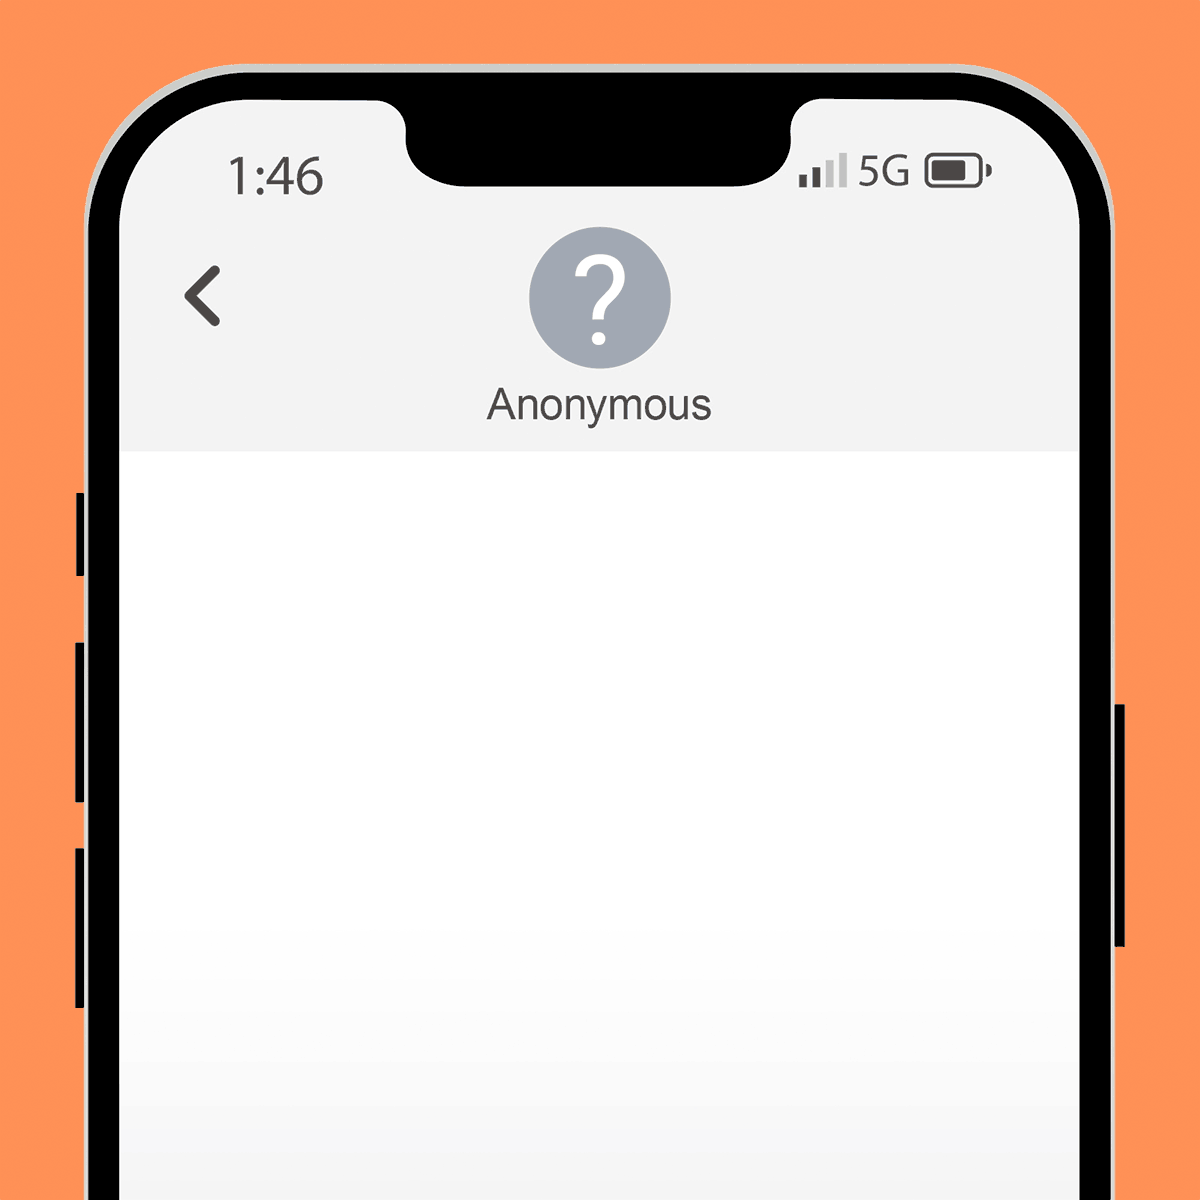 Come faccio a rendere il mio telefono anonimo su Google?